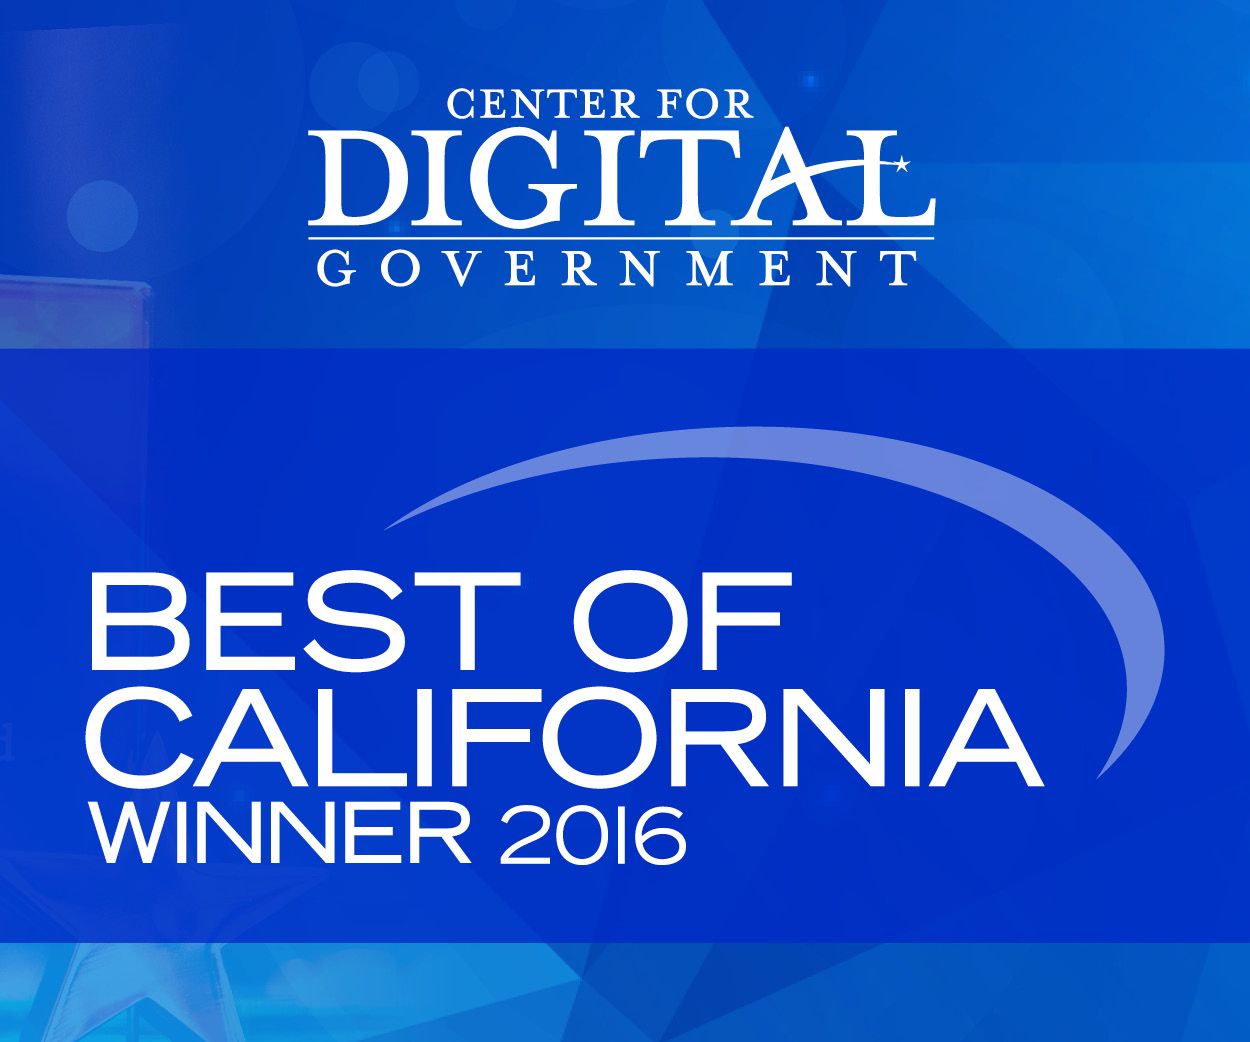 Center for Digital Government Best of California Winner 2016